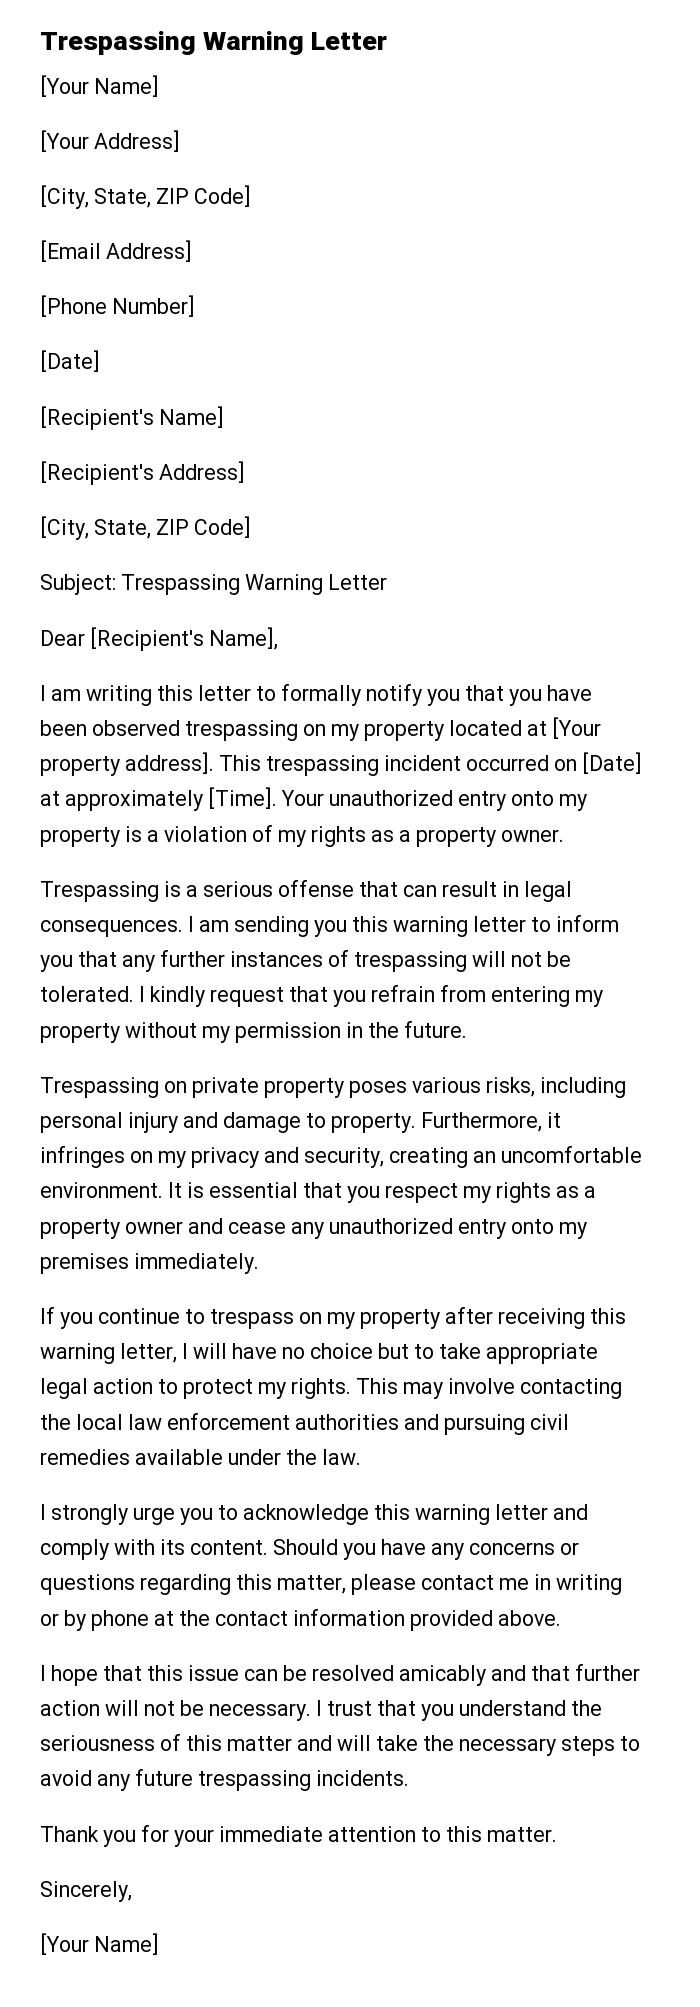 Trespassing Warning Letter